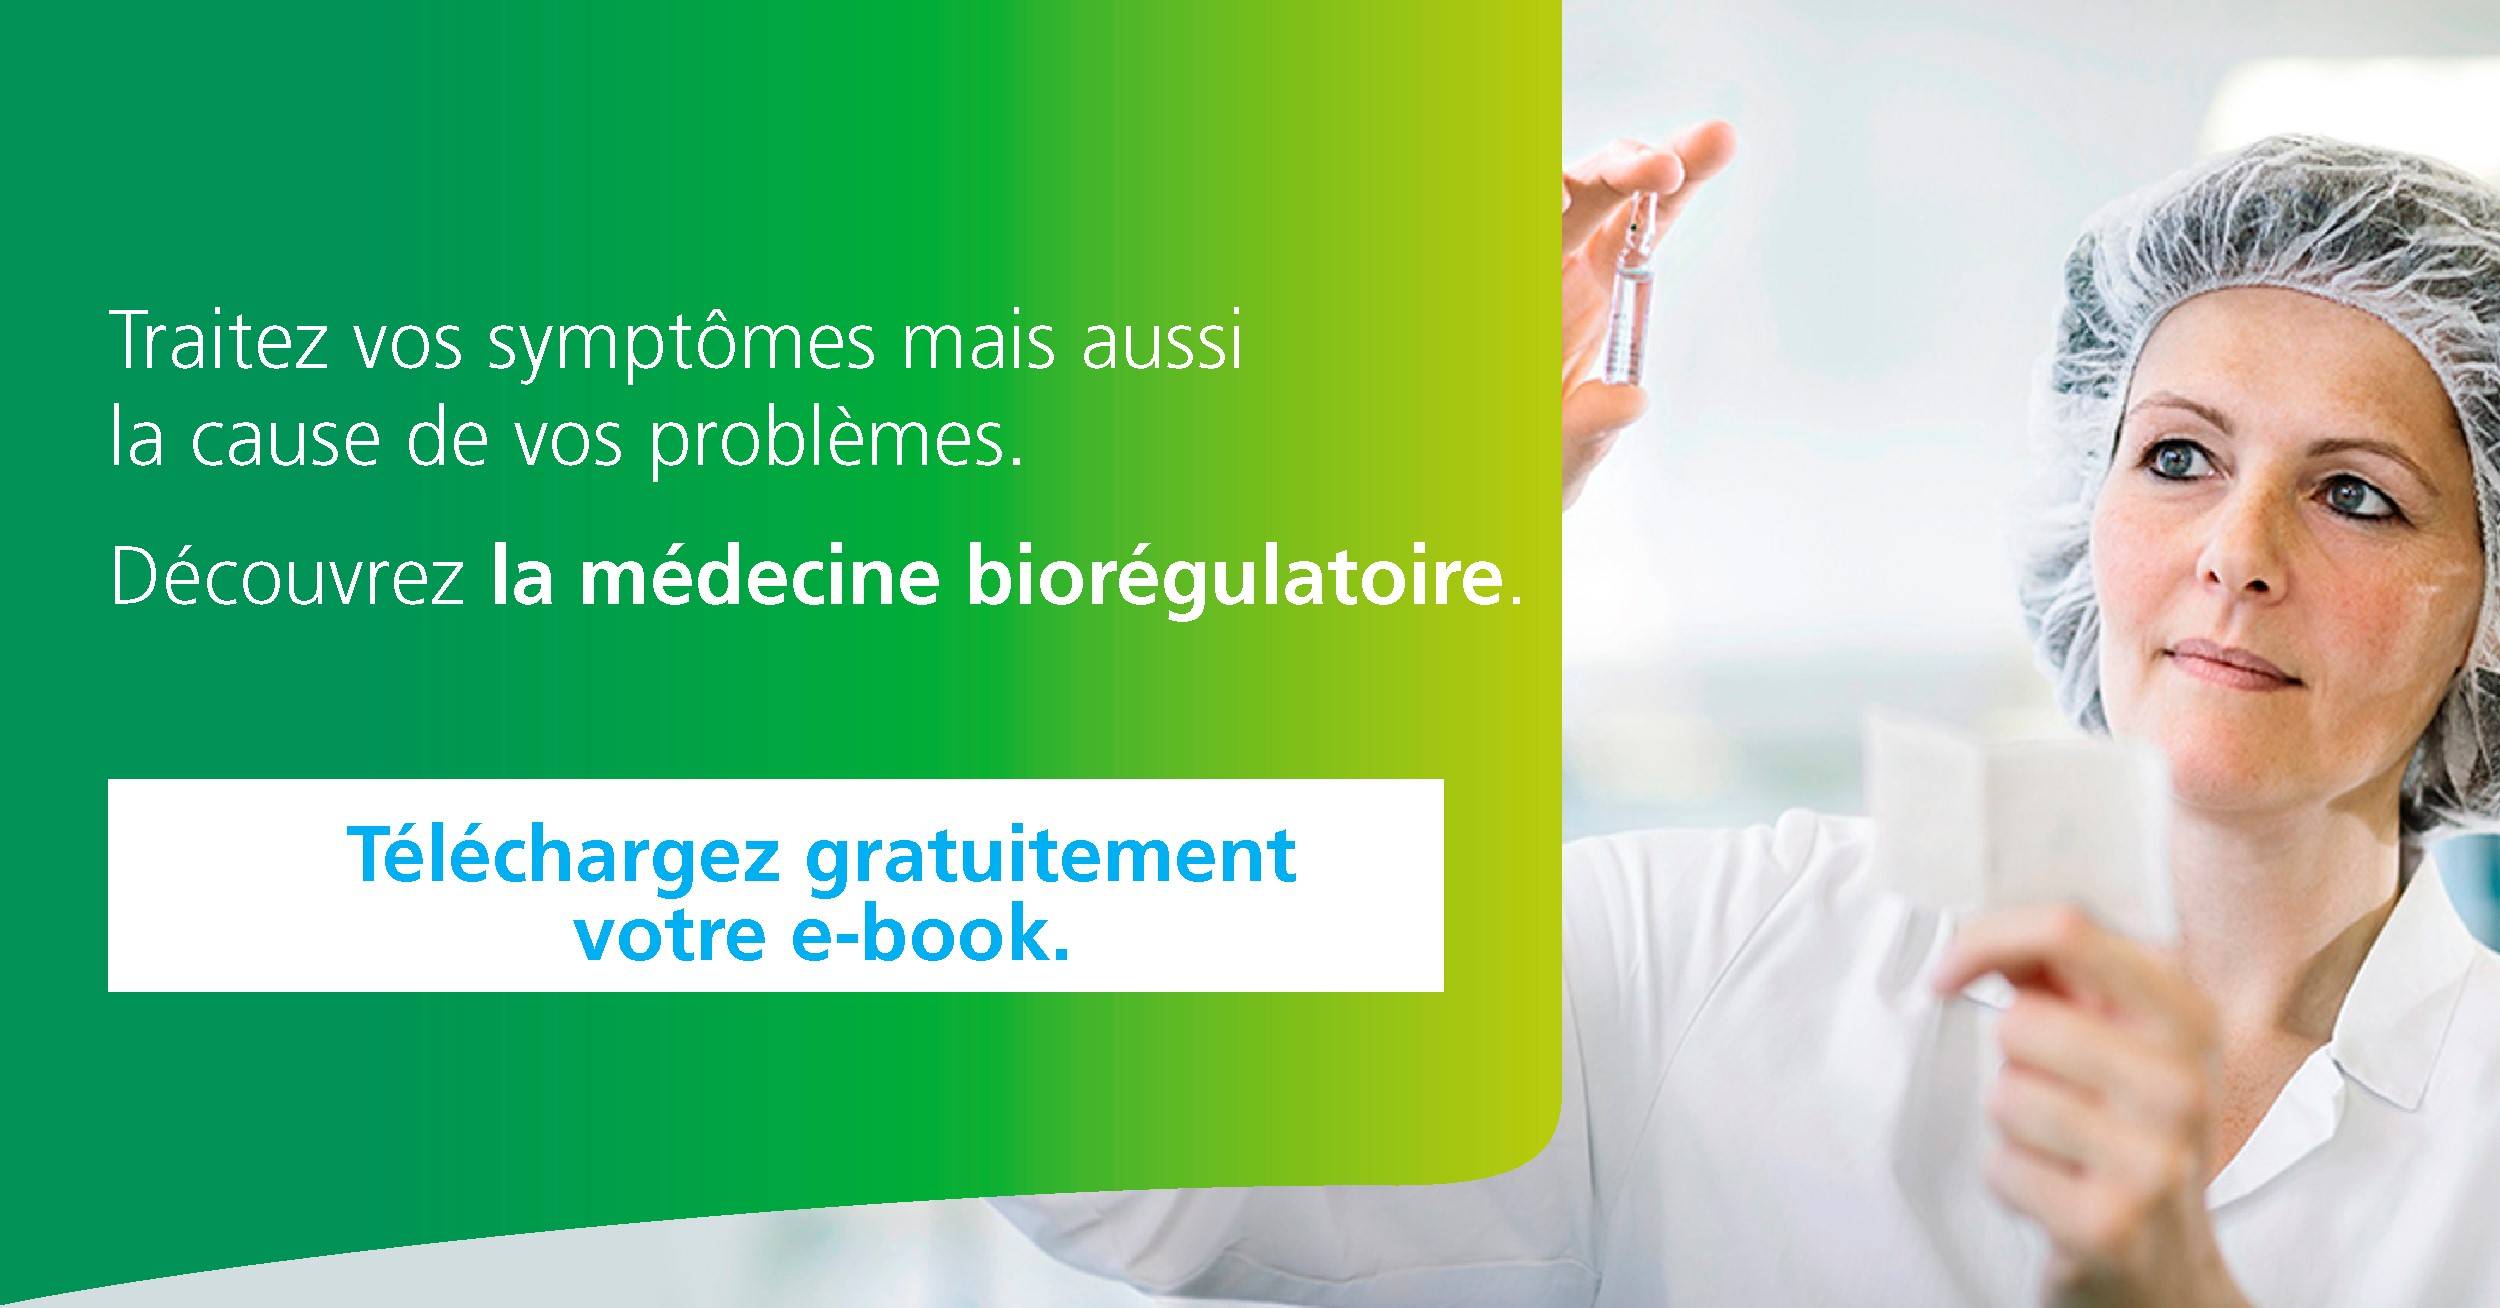 E-book sur la medecine bioregulatoire